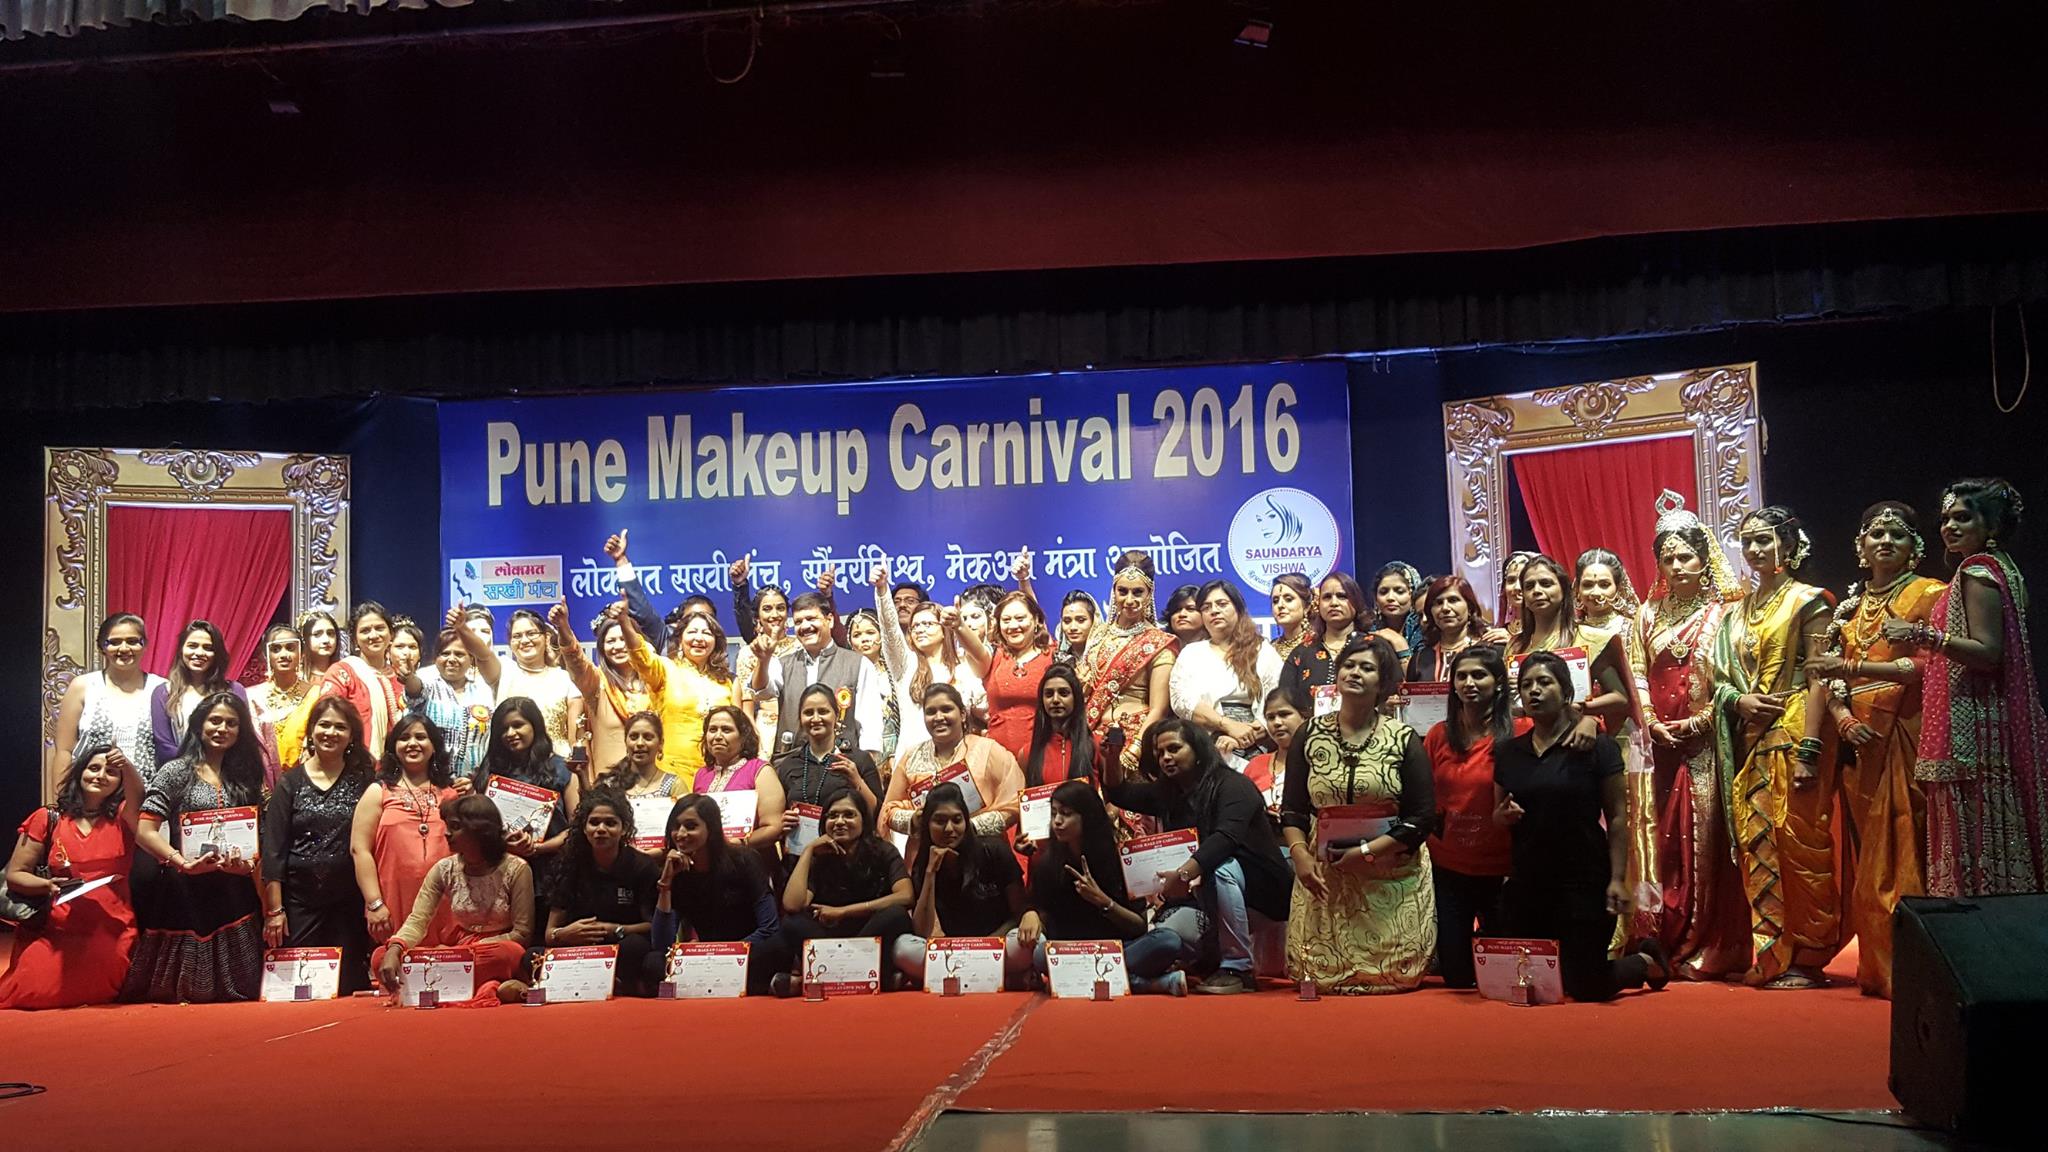 Pune Makeup Carnival 2016